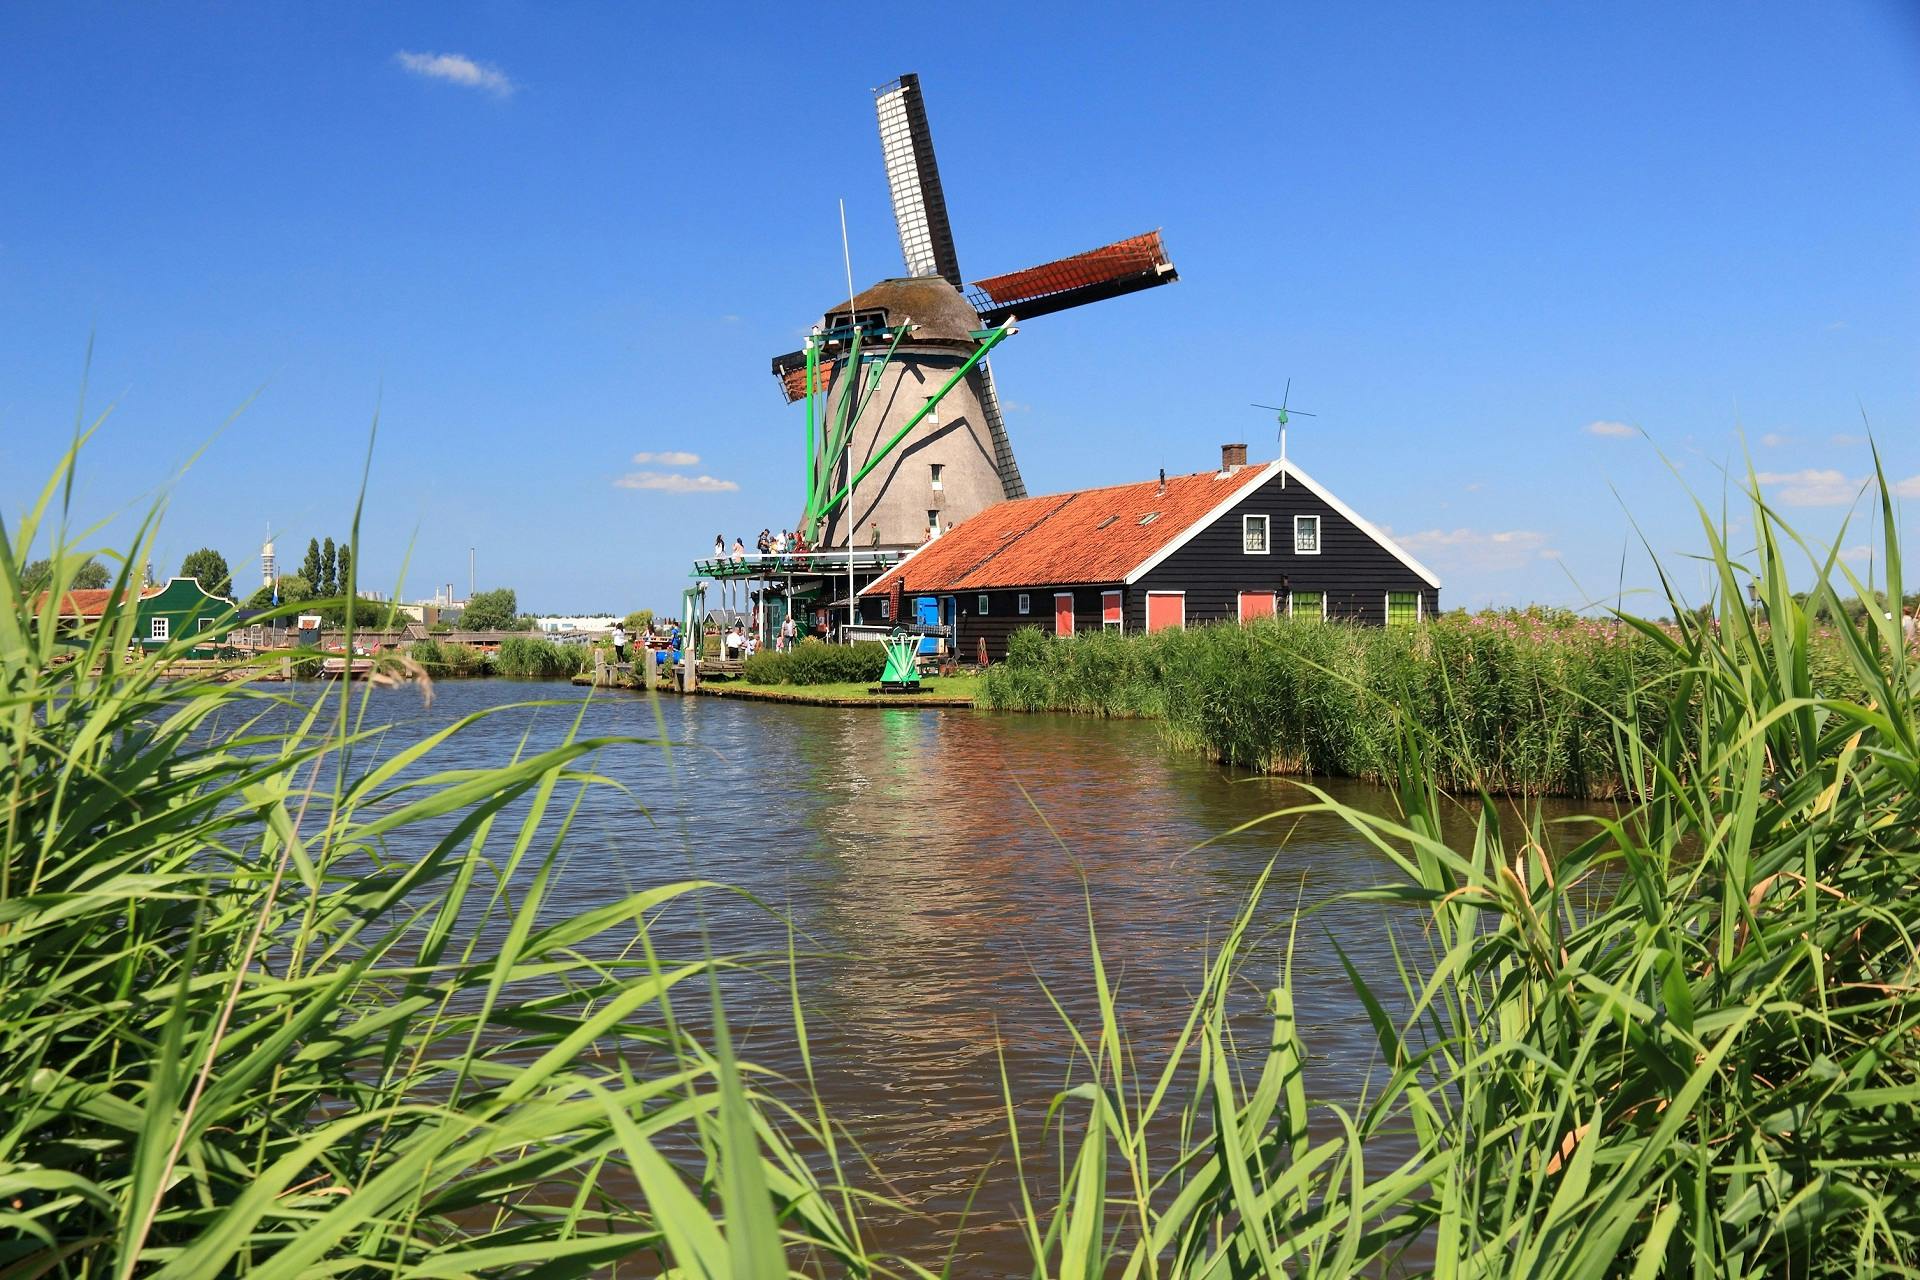 Excursión guiada en español a los molinos de Zaanse Schans, Edam, Volendam y Marken desde Ámsterdam